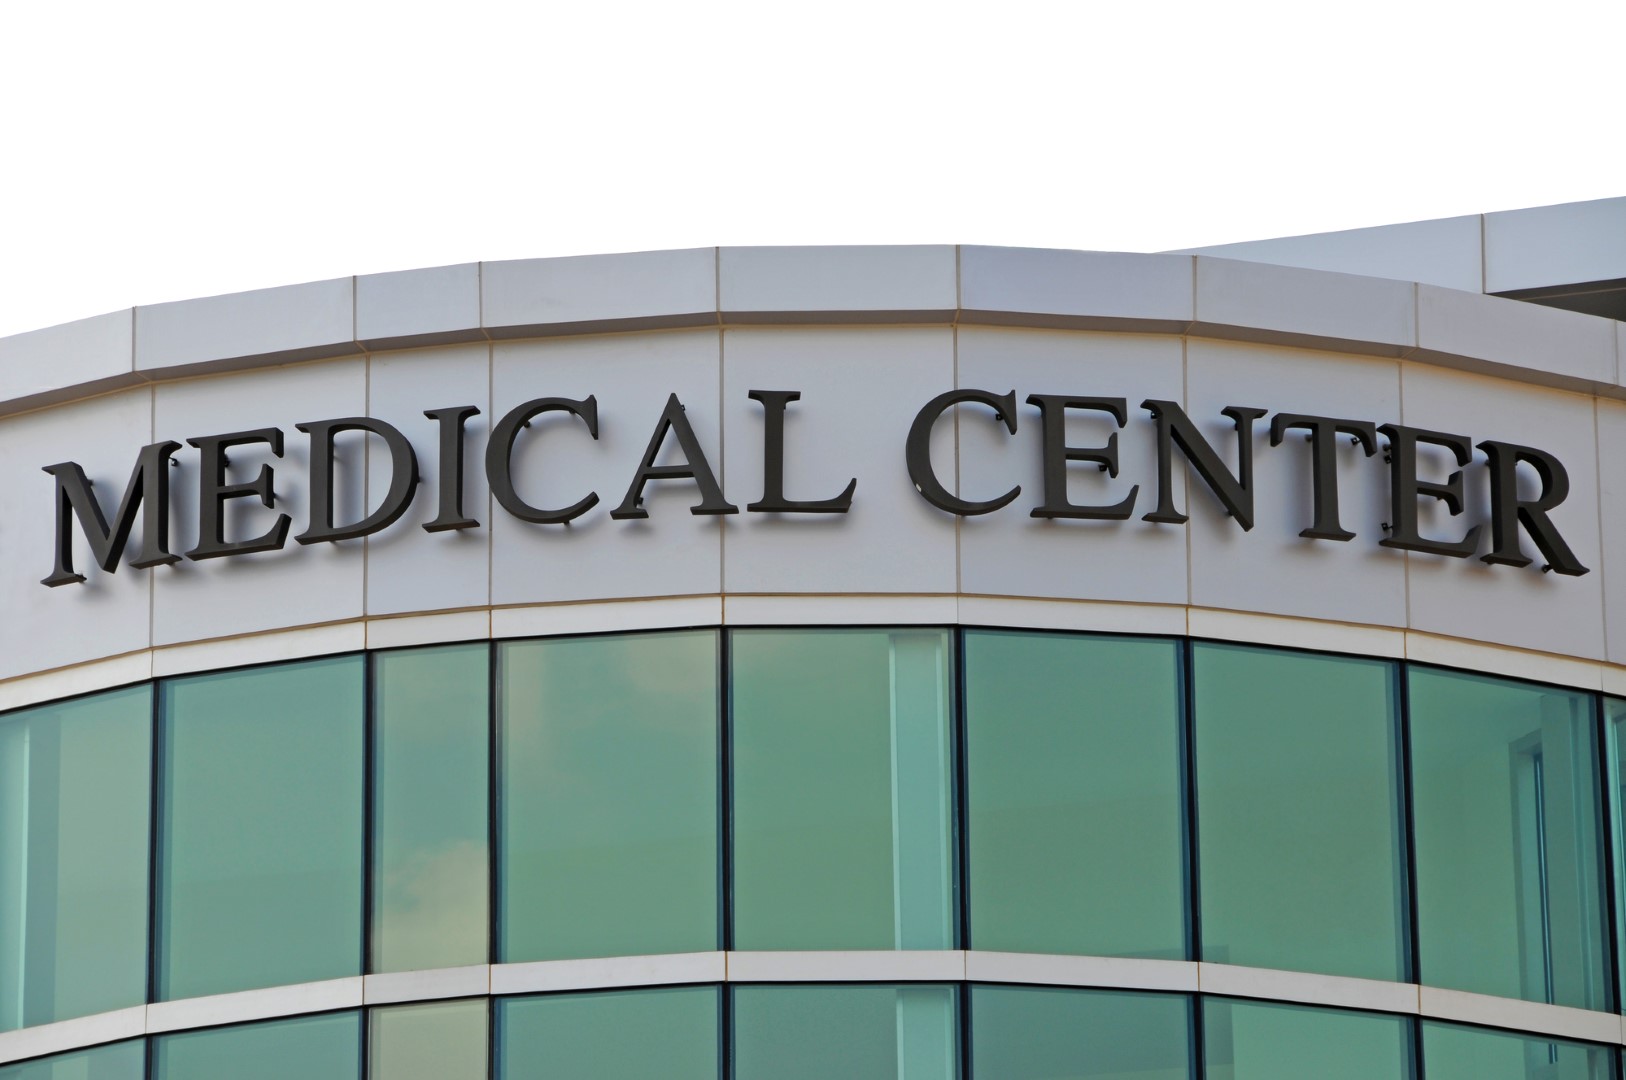 Medical Center Sign over New Hospital Entrance